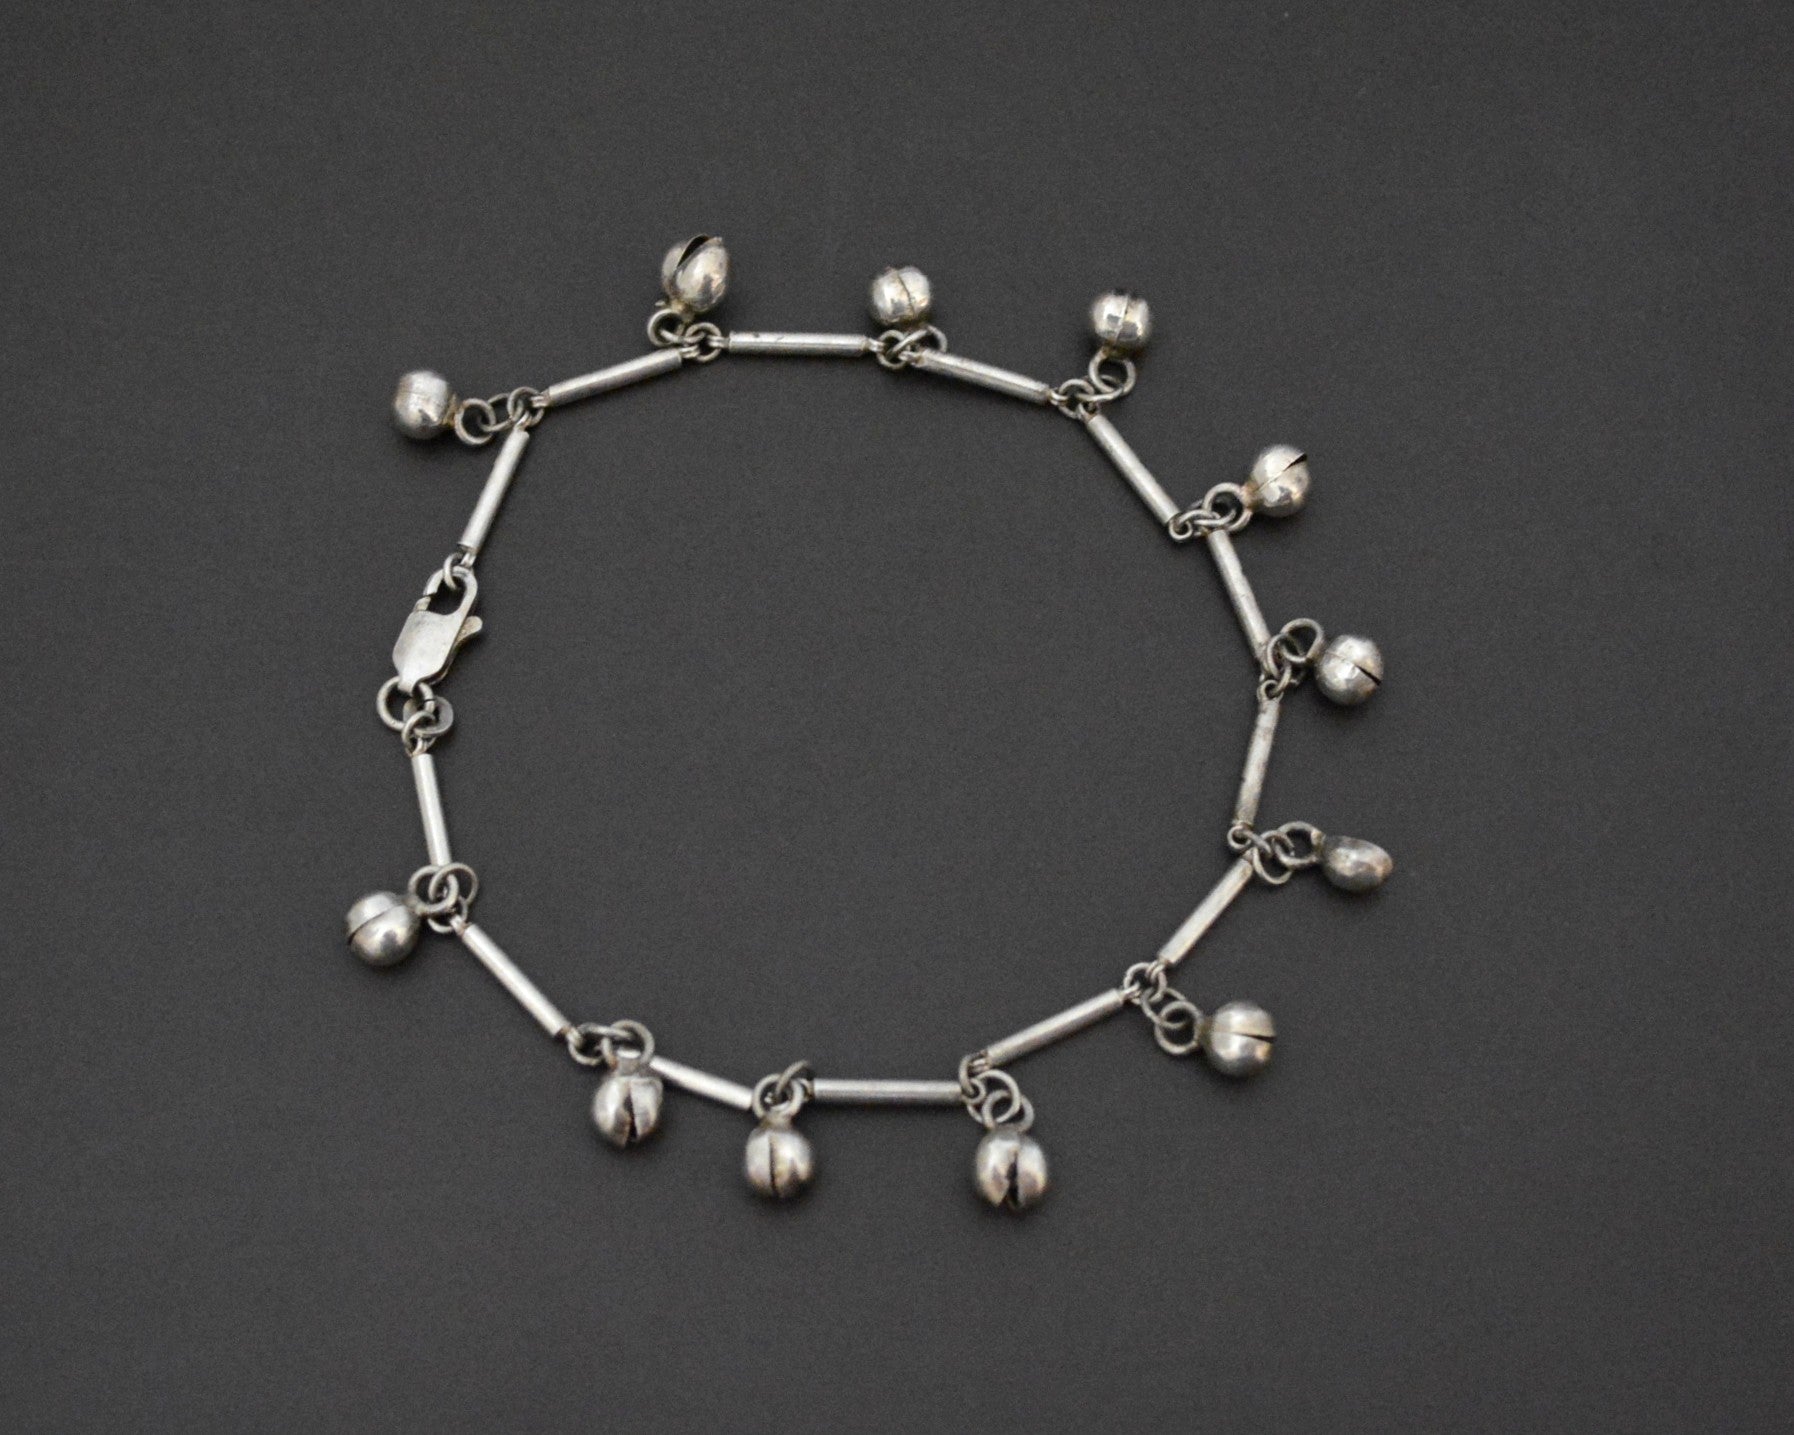 Ethnic Silver Bracelet or Anklet with Bells